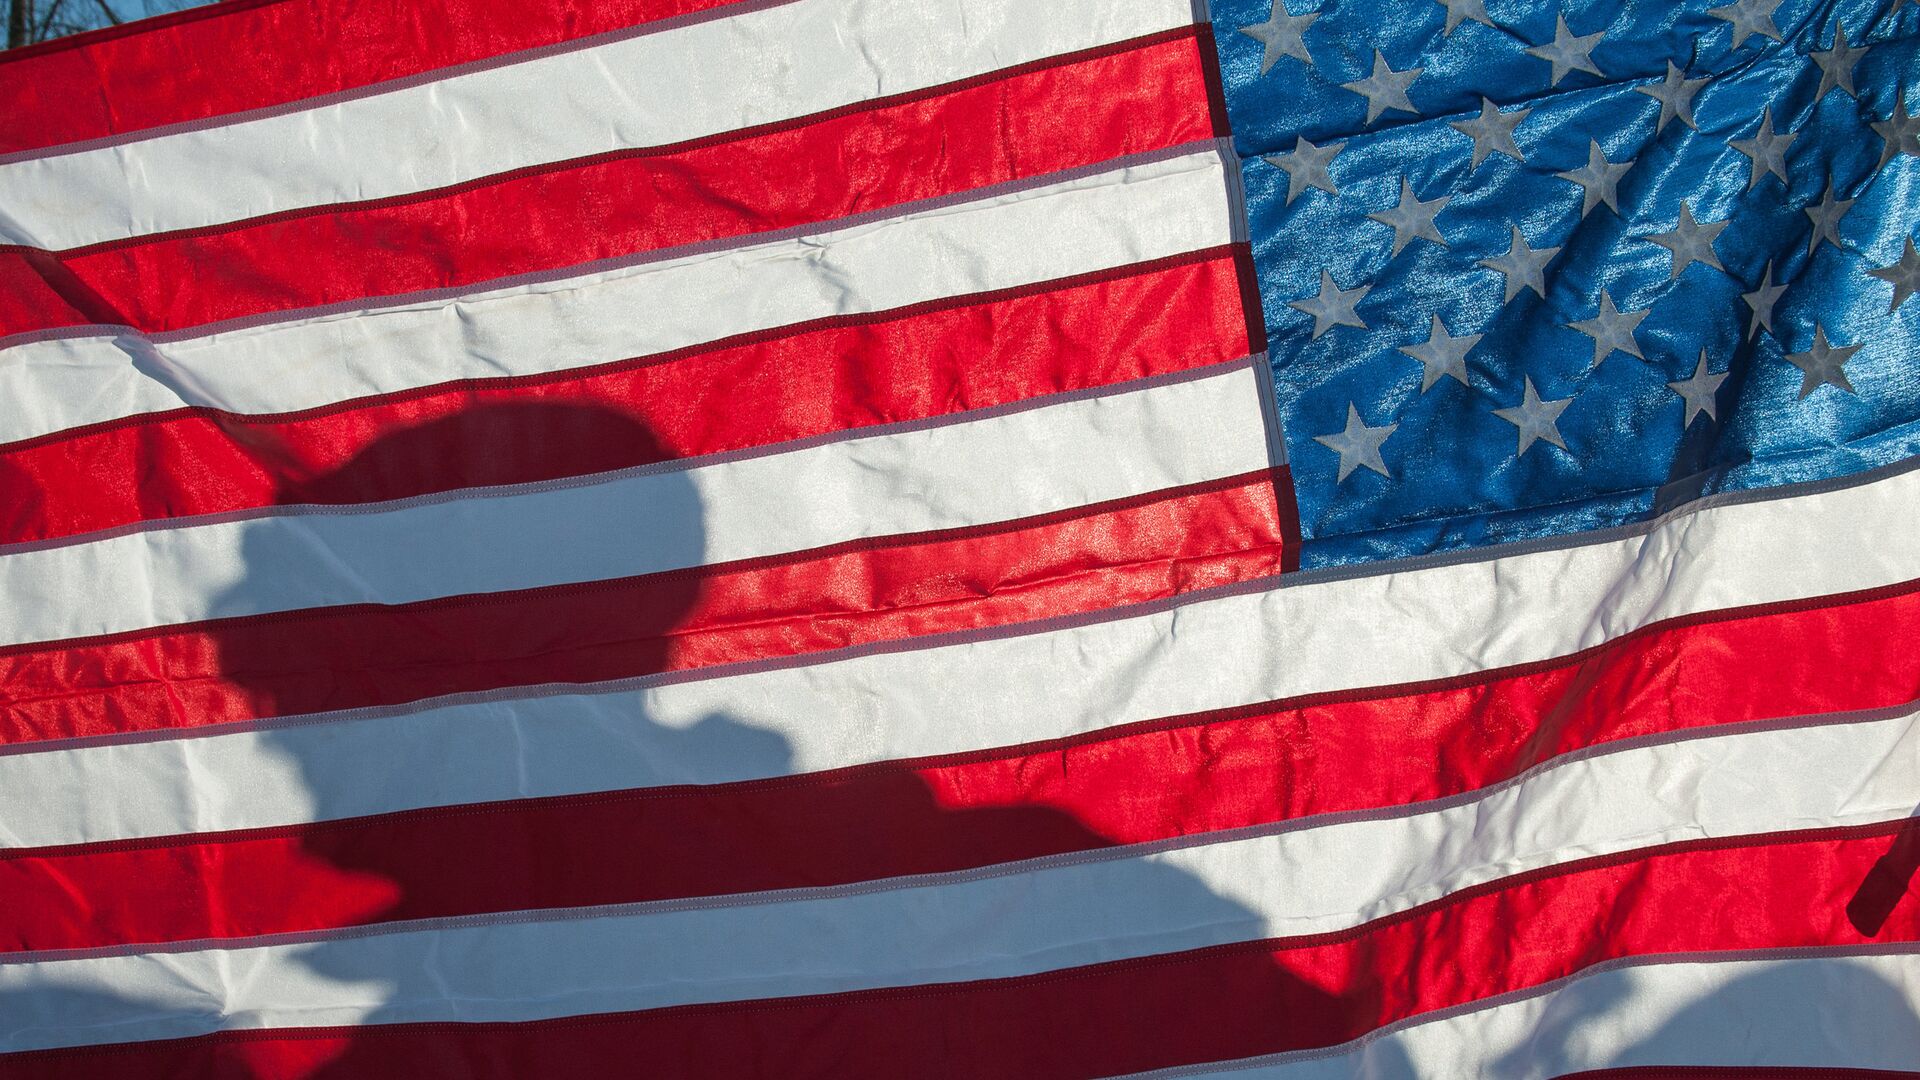 Флаг Соединённых Штатов Америки на демонстрации военной техники и вооружения НАТО в Латвии - РИА Новости, 1920, 06.11.2019